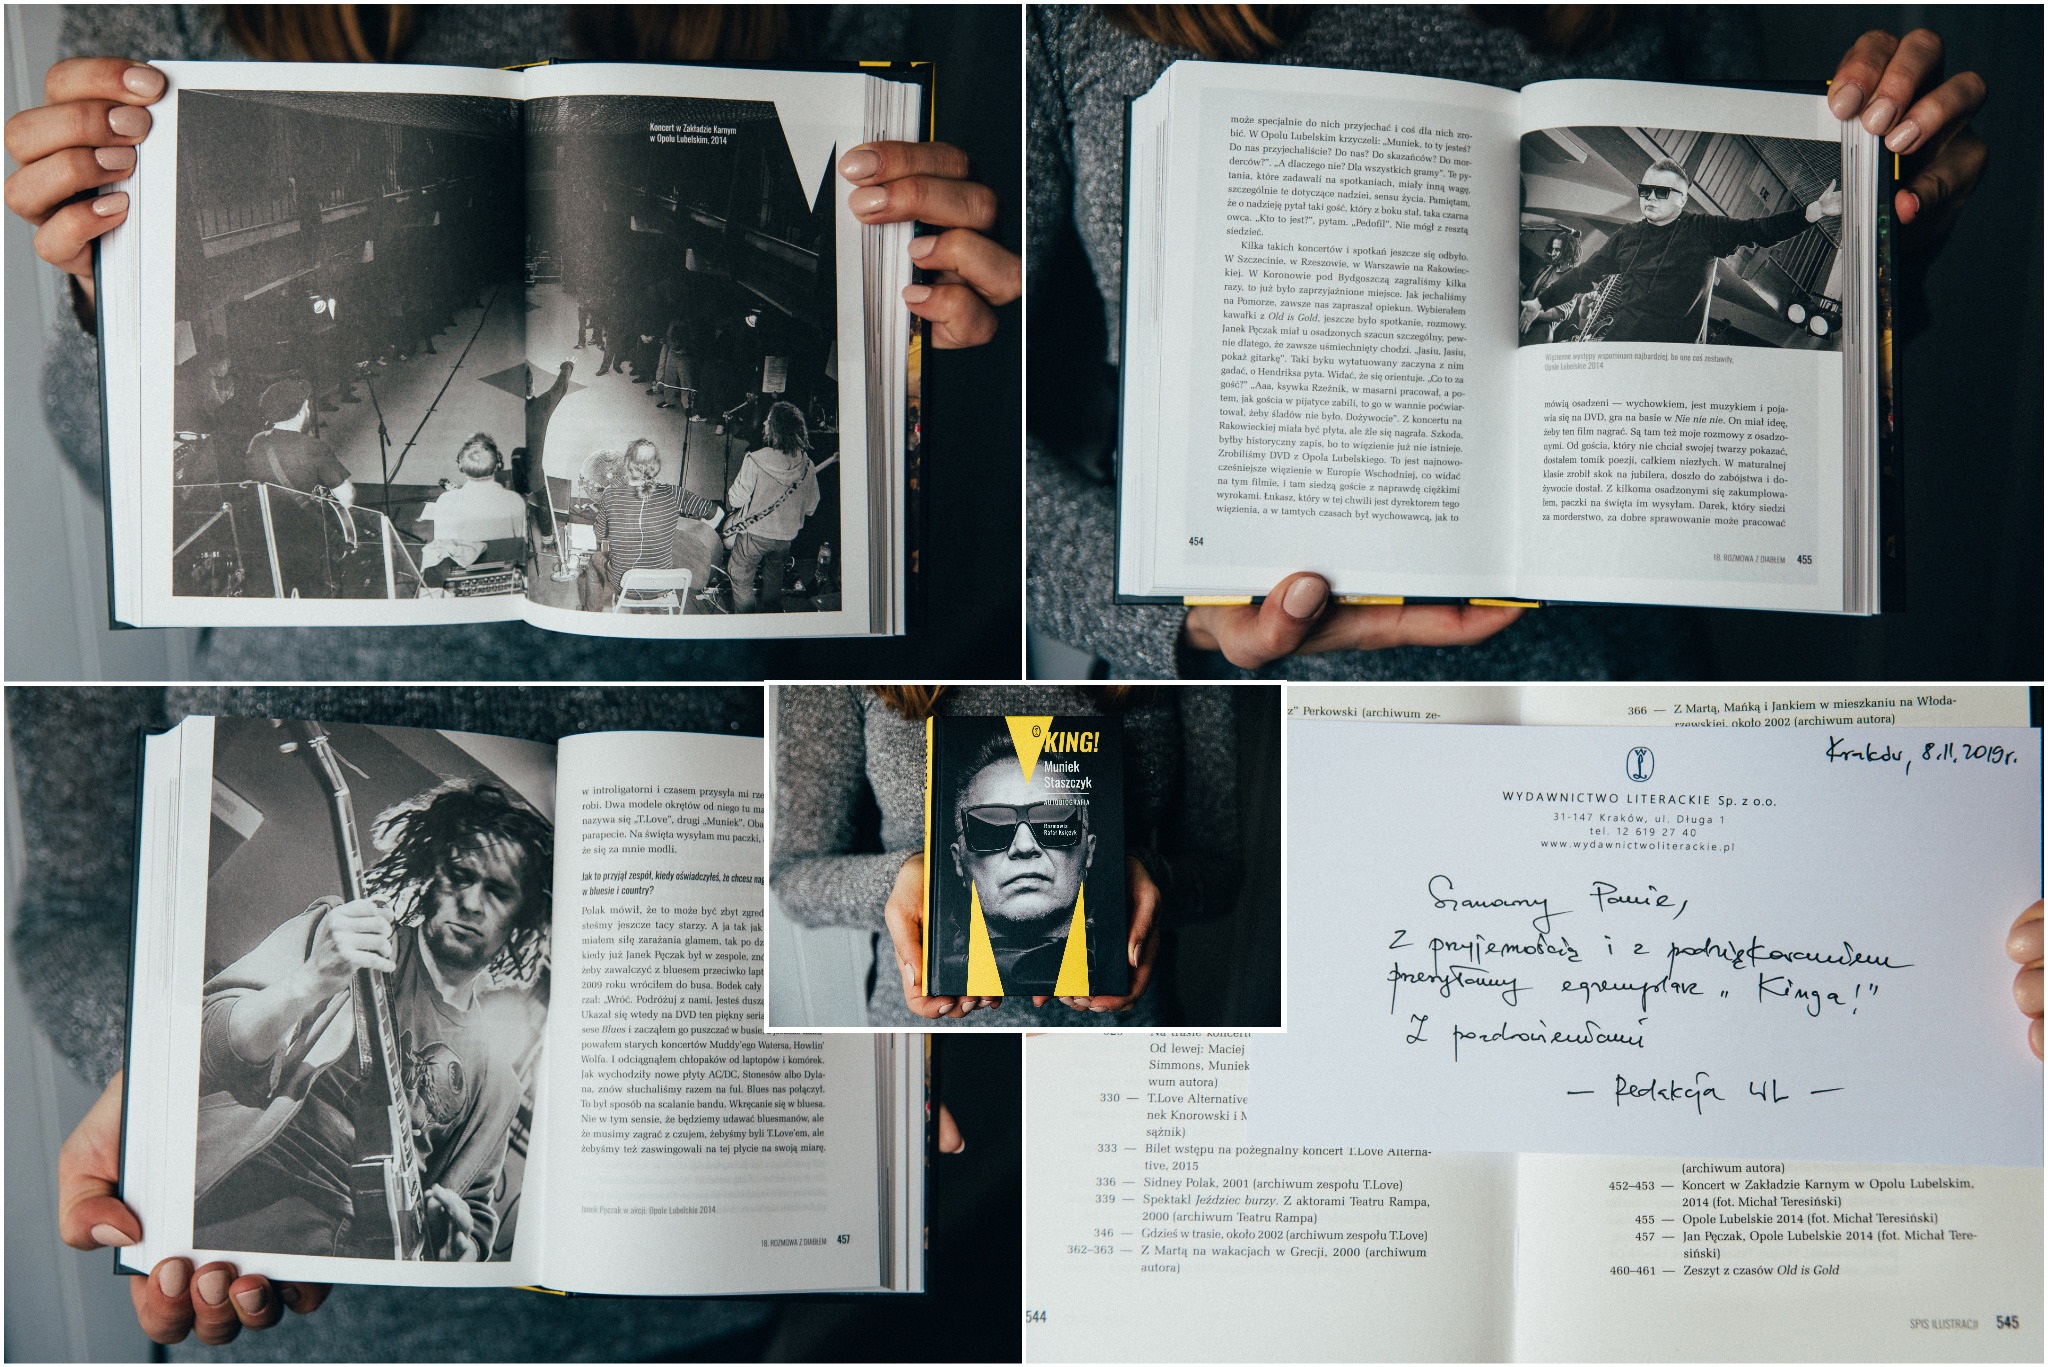 Zdjęcia w autobiografii Muńka Staszczyka King!